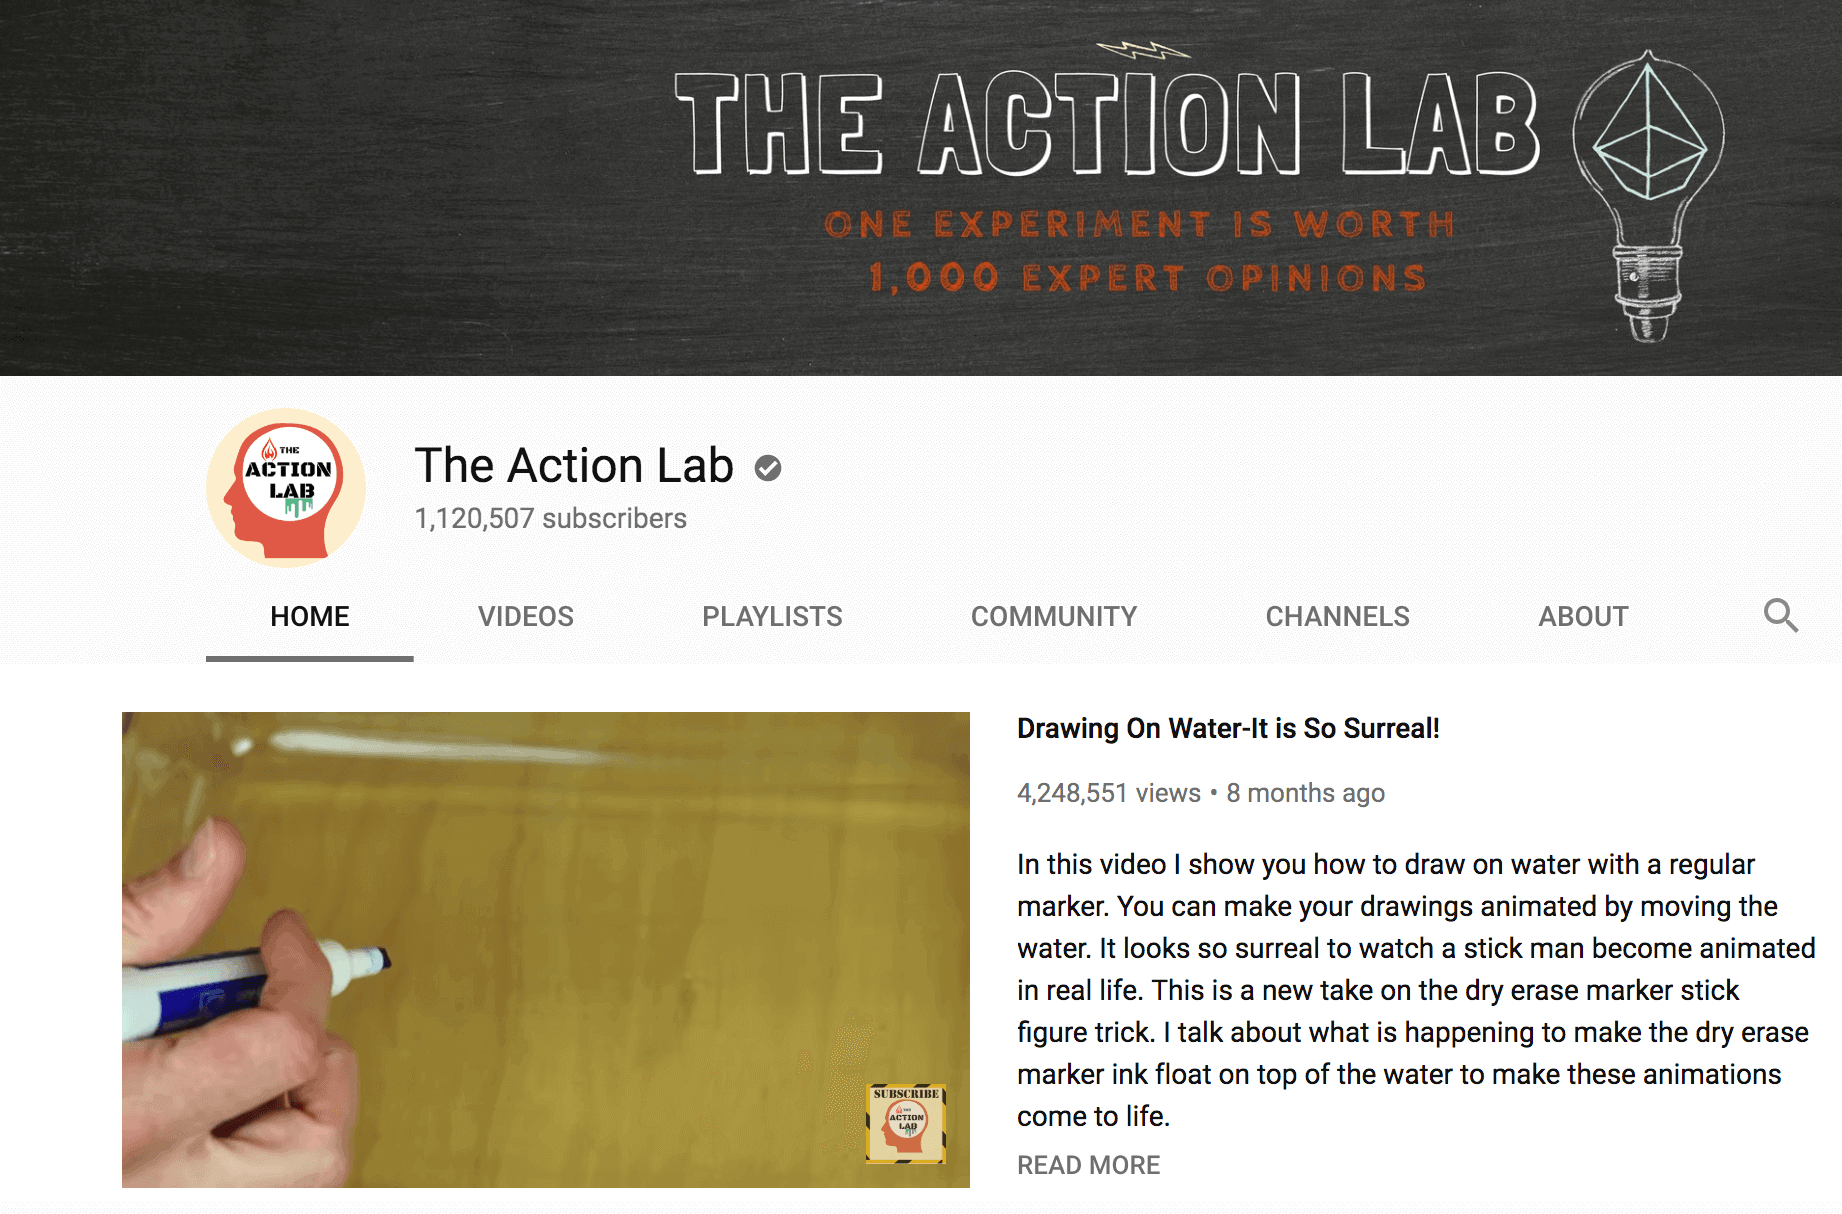 Action Lab